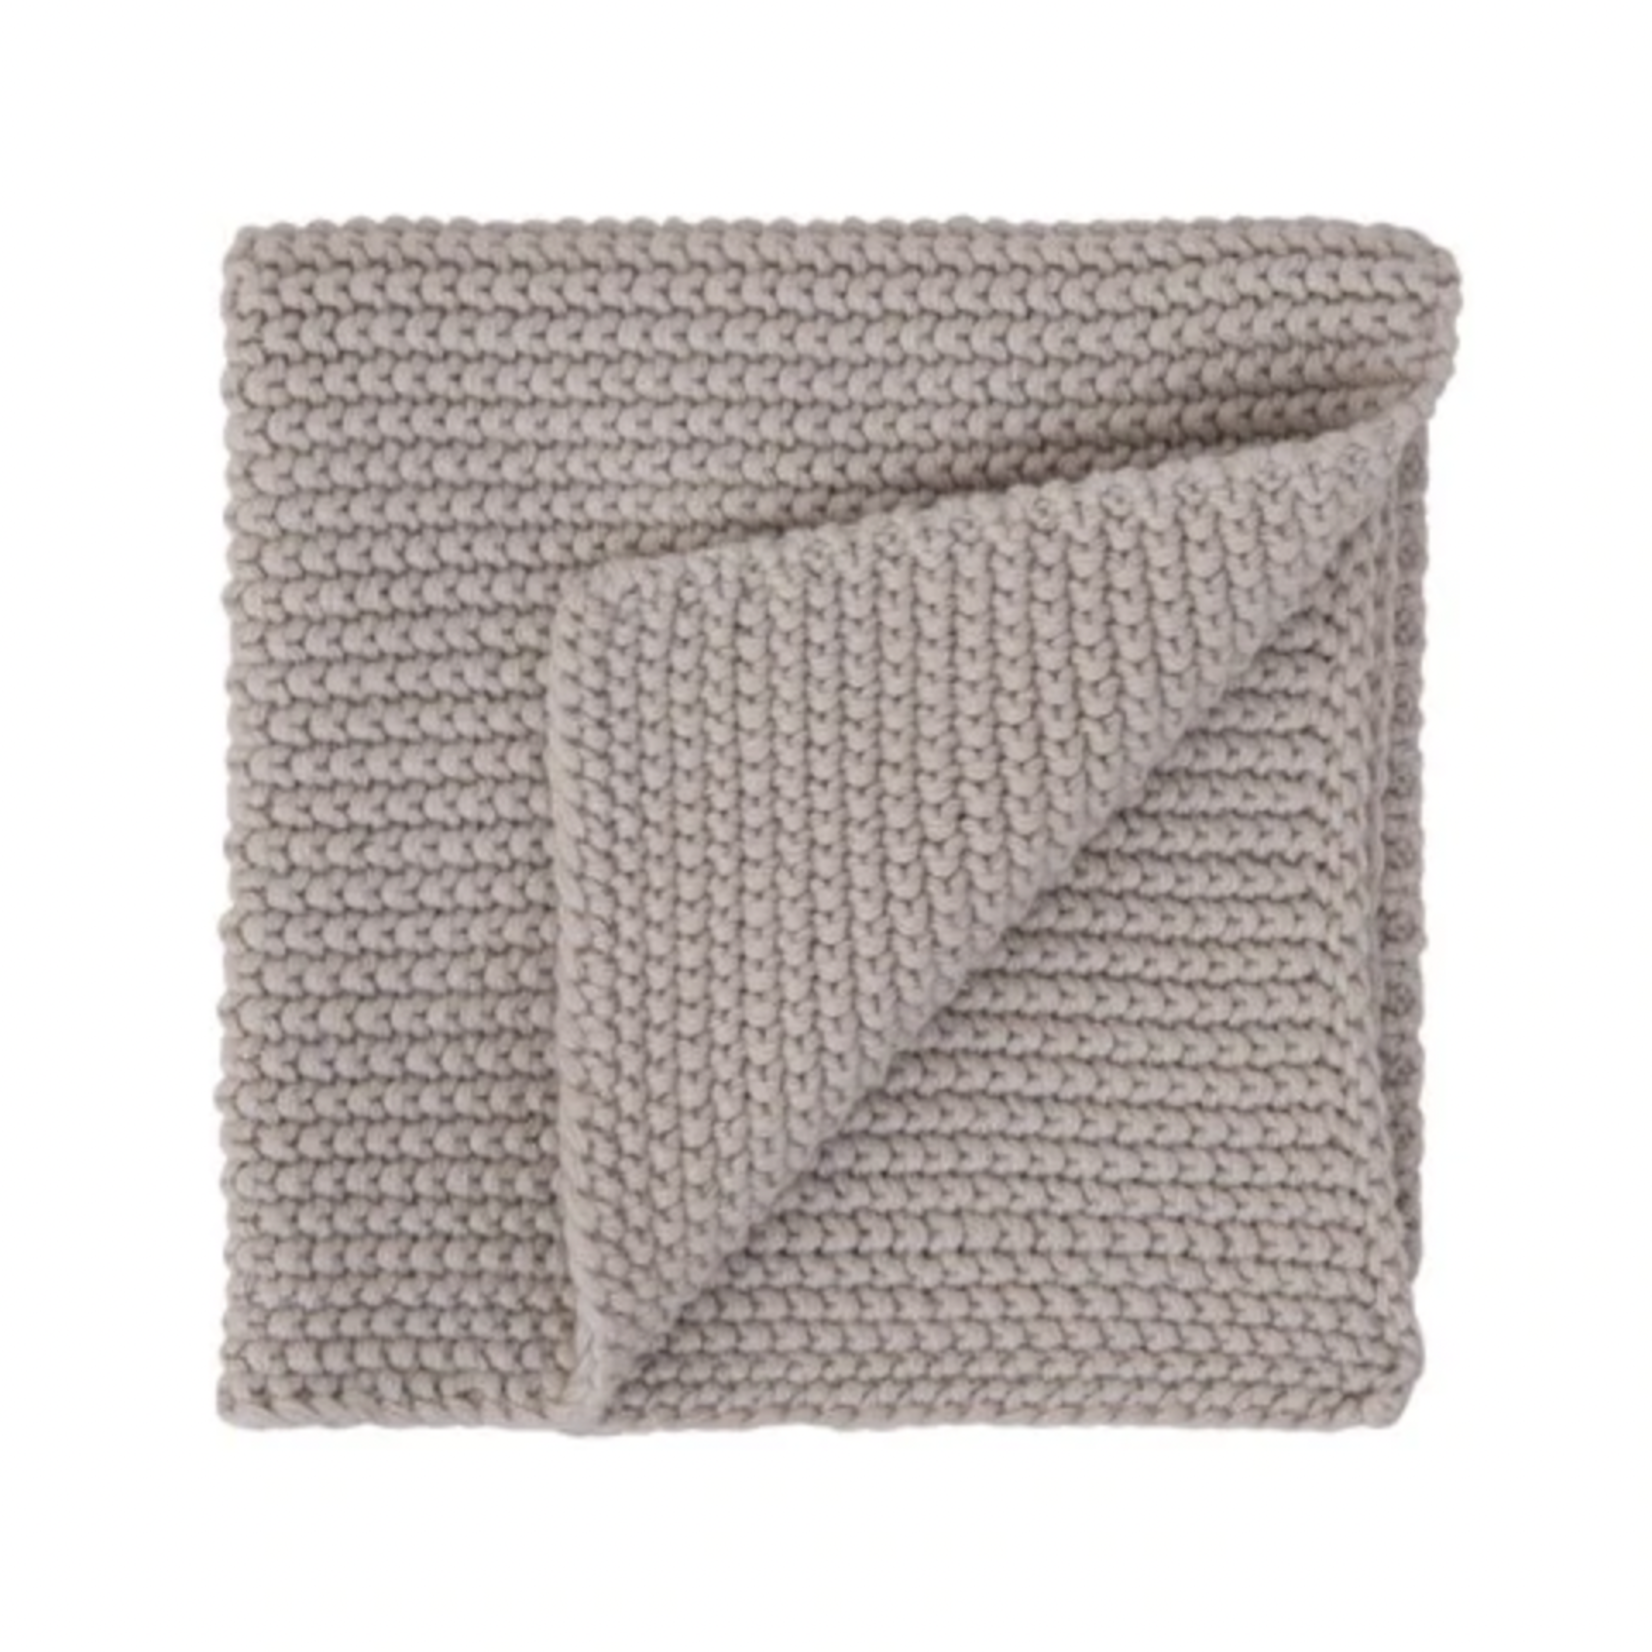 Cotton Knit Dish Cloth - Natural